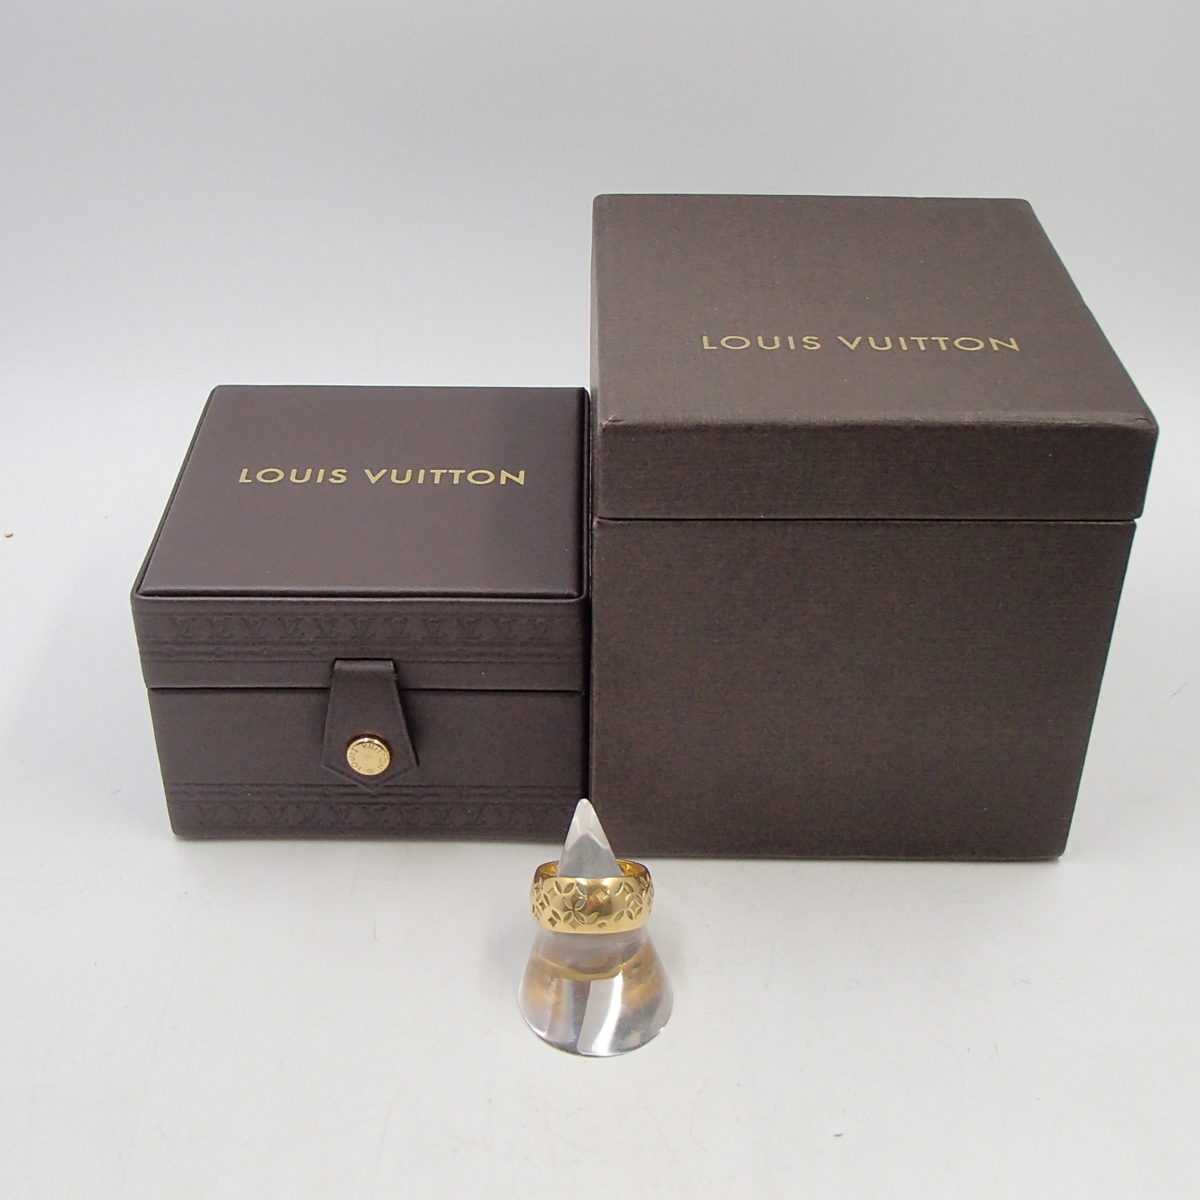 ルイ・ヴィトン LV Louis Vuitton プティット バーグ ガレア リング イエローゴールド #52 750 K18 LOUIS VUITTON 指輪　付属品